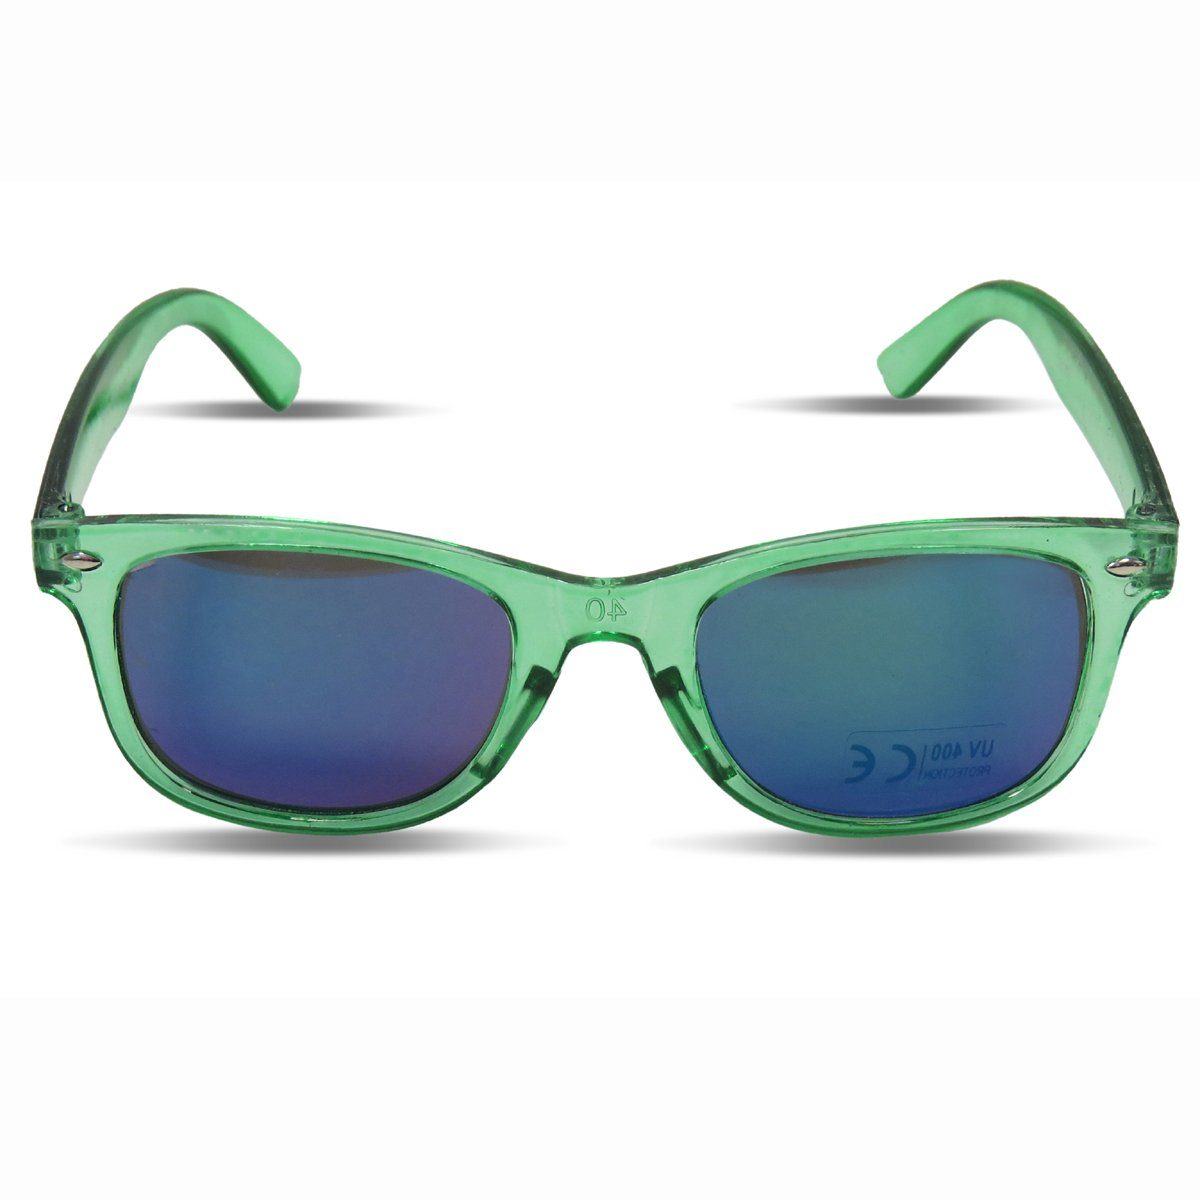 Sonia Originelli Sonnenbrille gruen Sonnenbrille Verspiegelt Style" "Kids Onesize Kinder Transparent Brille